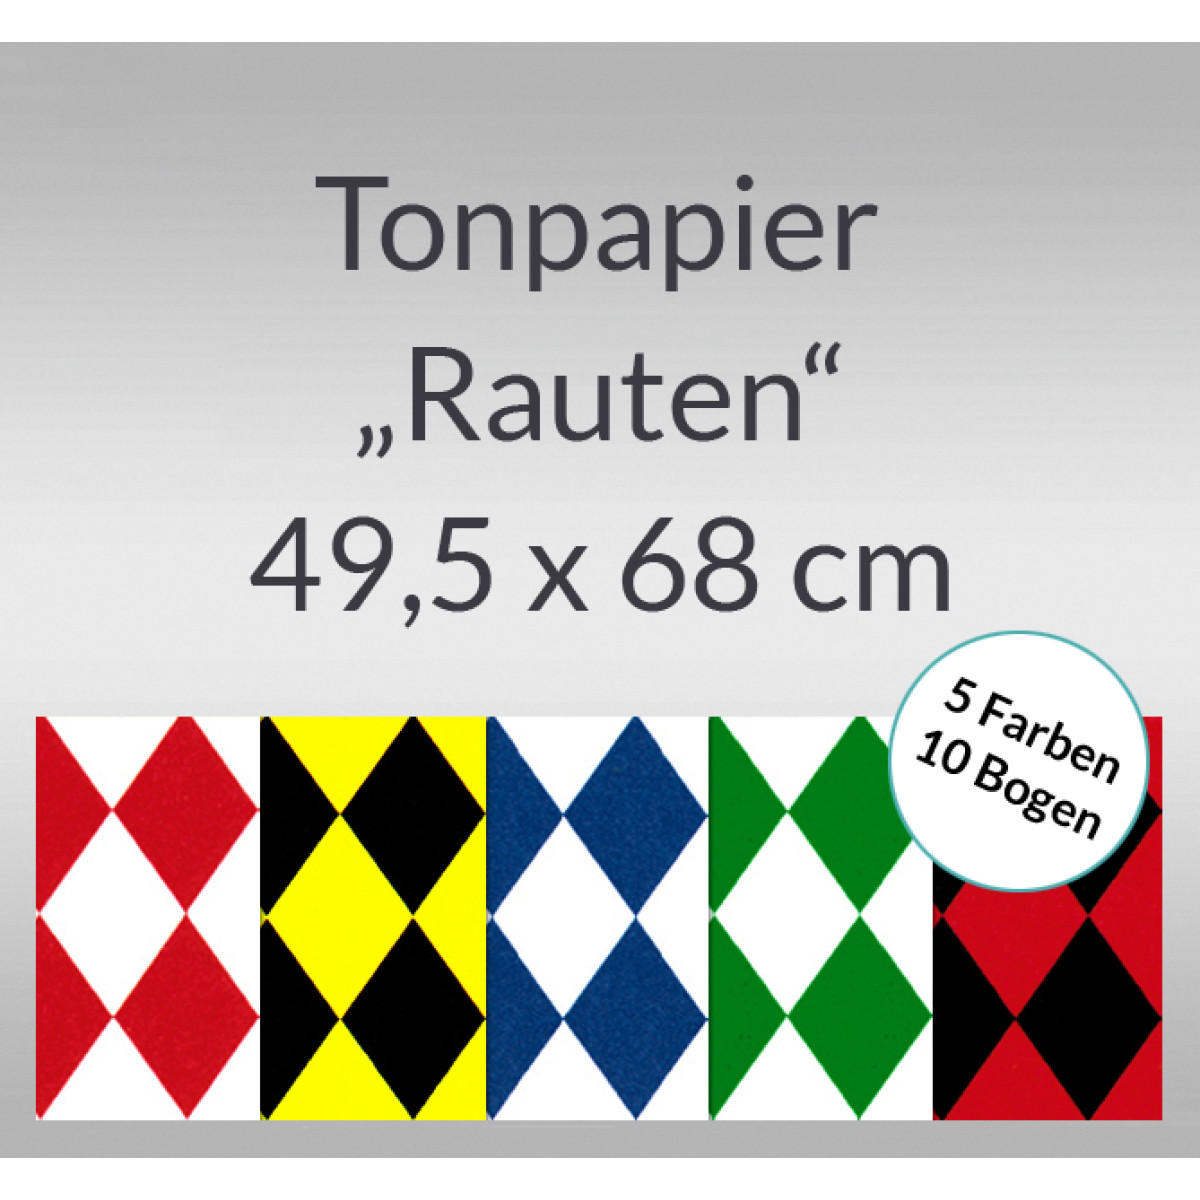 Rauten-Tonzeichenpapier 130 g/qm 49,5 x 68 cm - 10 Bogen sortiert